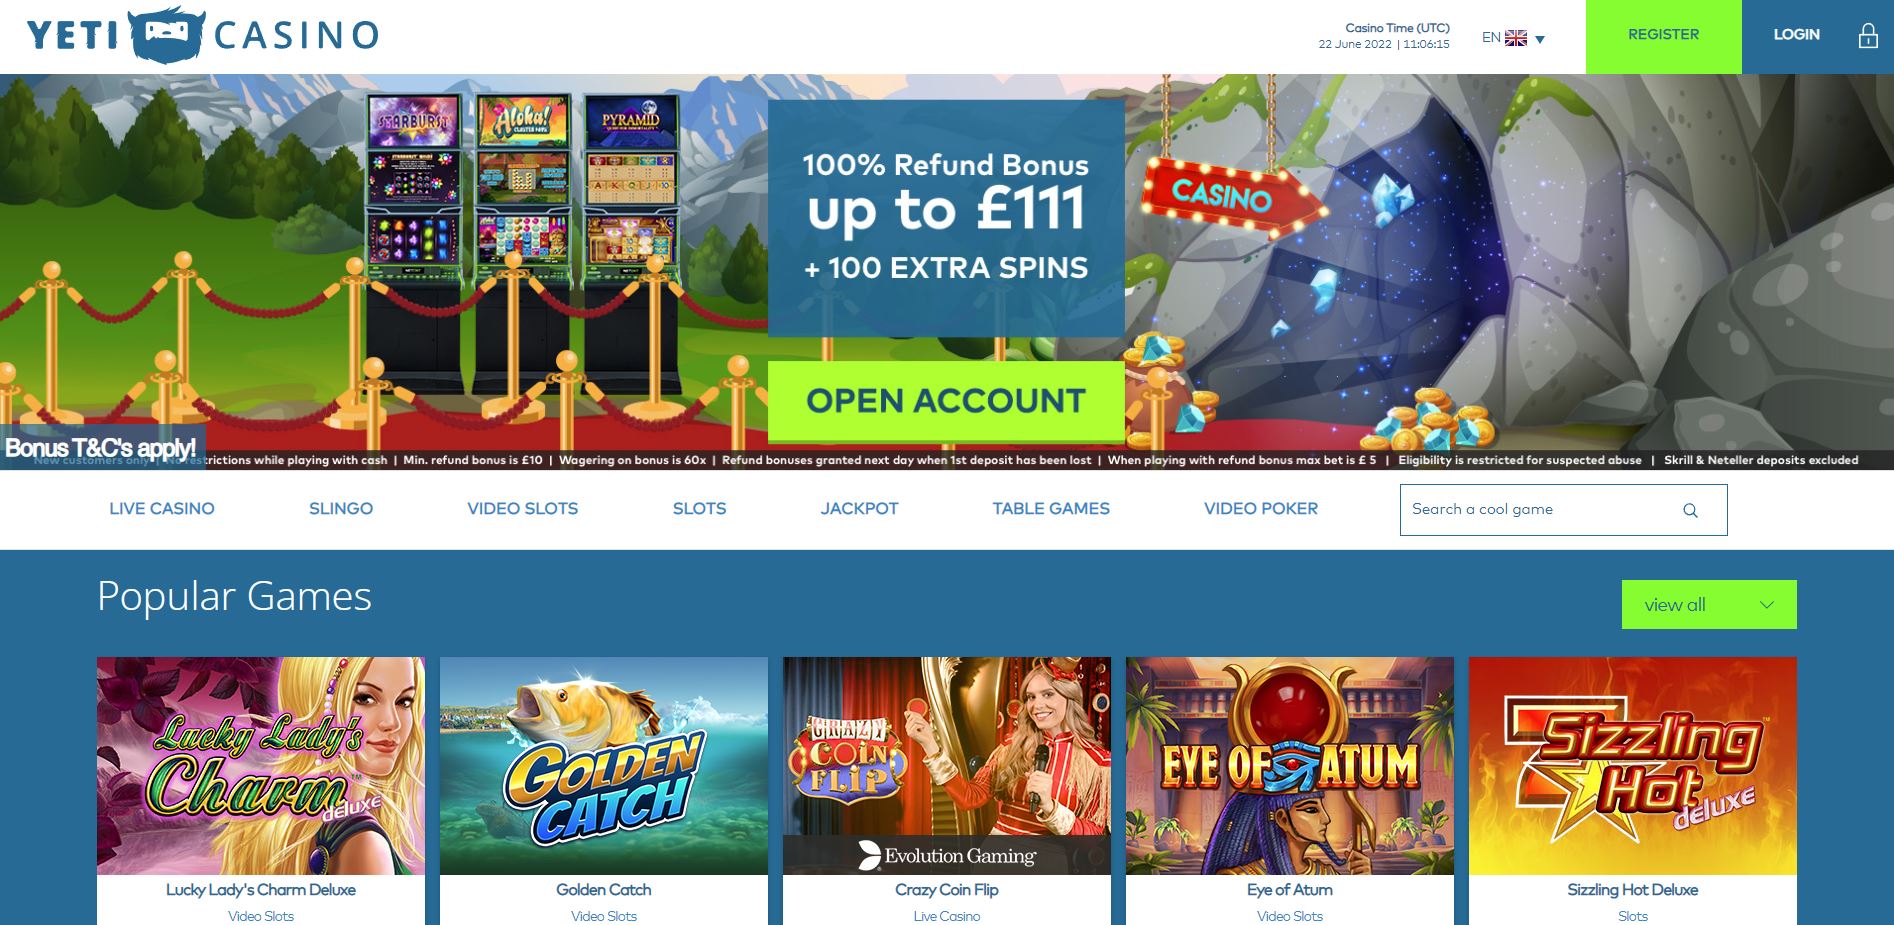 Yeti Casino homepage